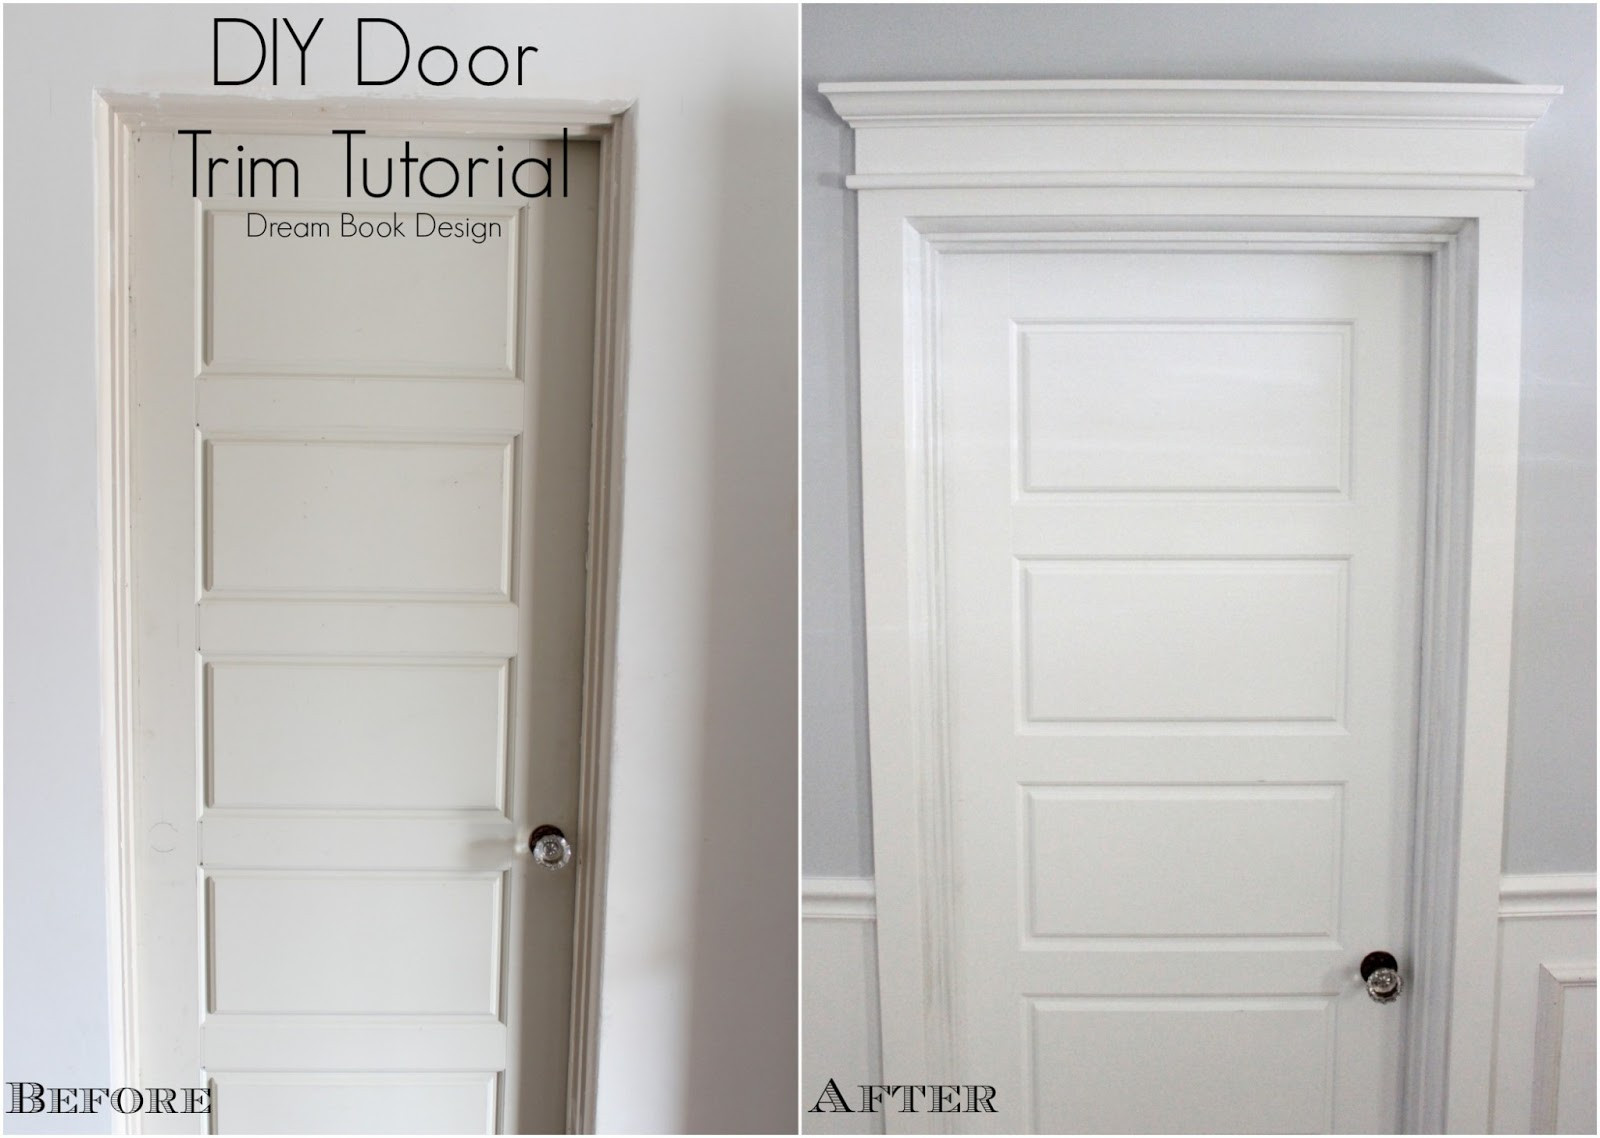 Best ideas about DIY Door Frame
. Save or Pin DIY Door Trim Tutorial Dream Book Design Now.